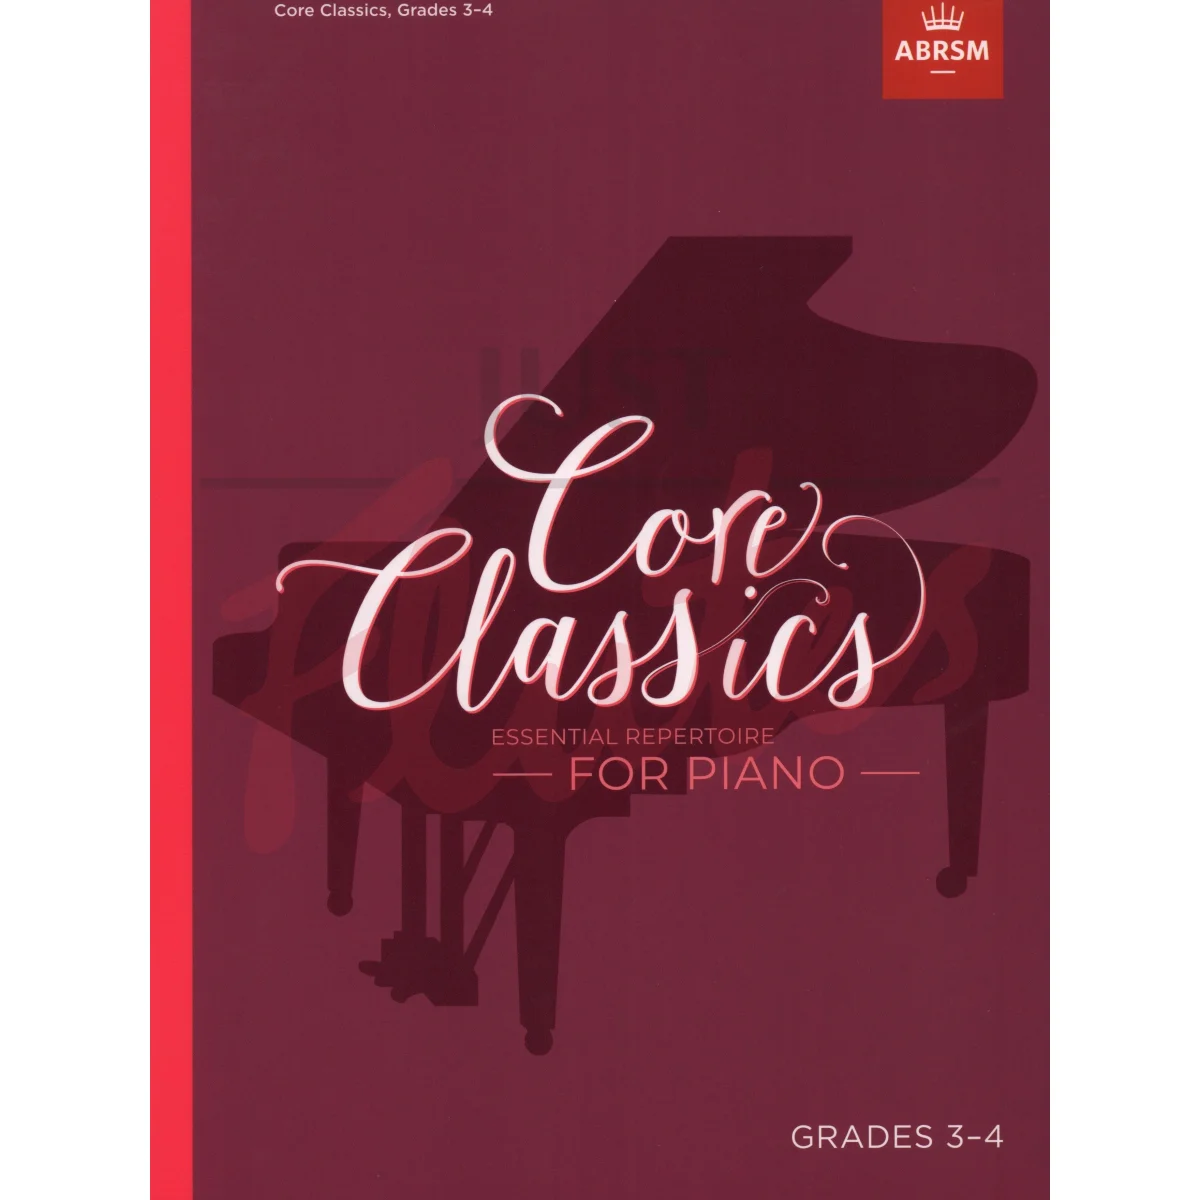 Core Classics Grades 3-4 Essential Repertoire for Piano